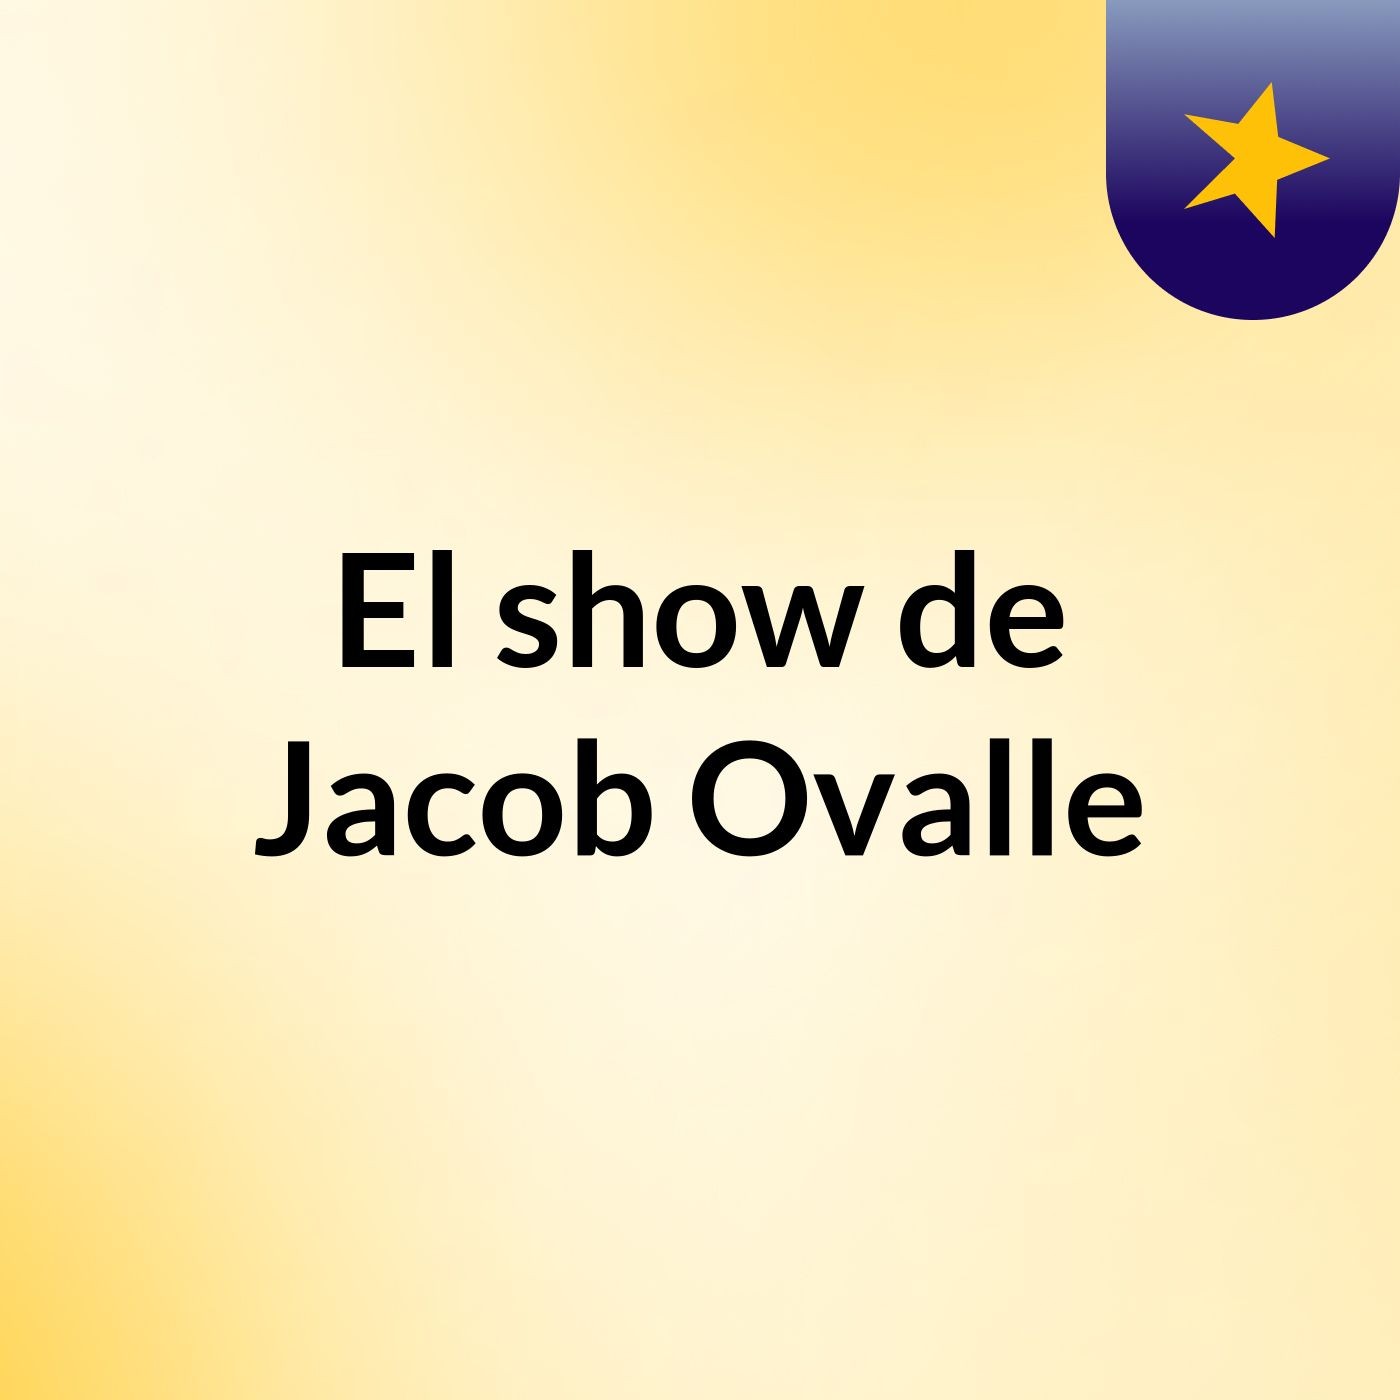 El show de Jacob Ovalle